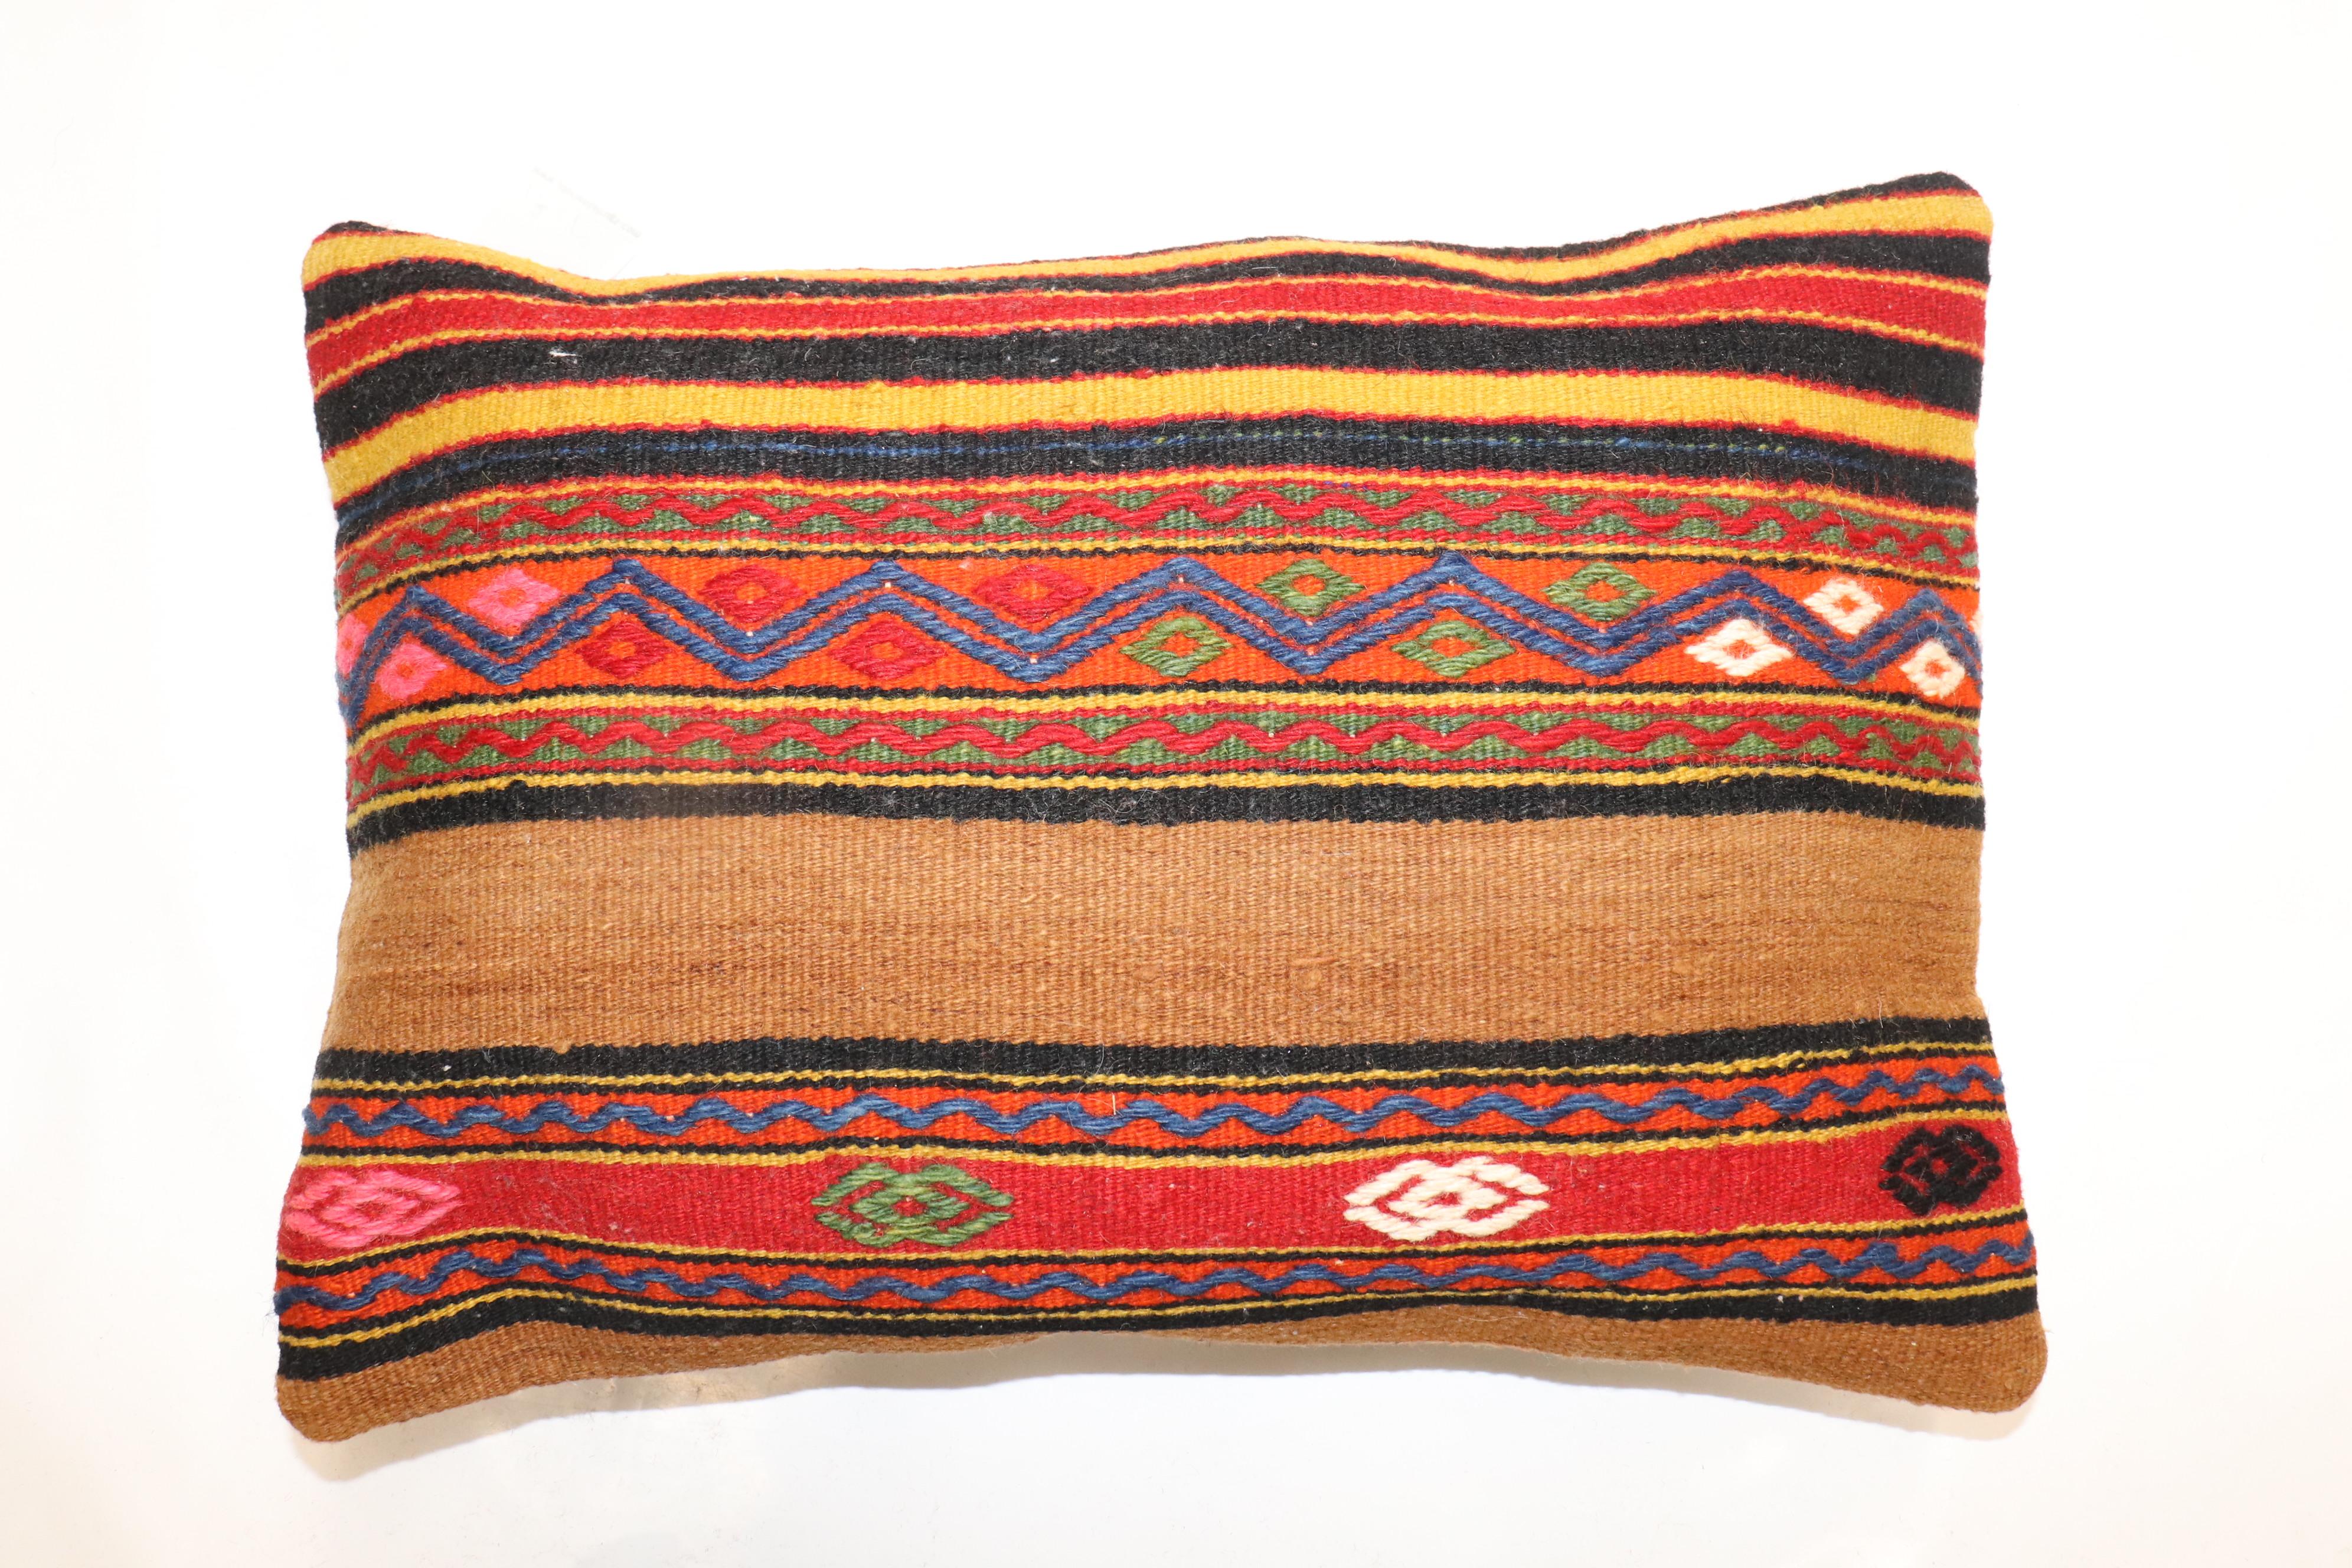 Kissen aus einem alten türkischen Kelim mit Baumwollrücken. Mit Reißverschluss und Schaumstoffeinlage. 

Maße: 14'' x 20''.